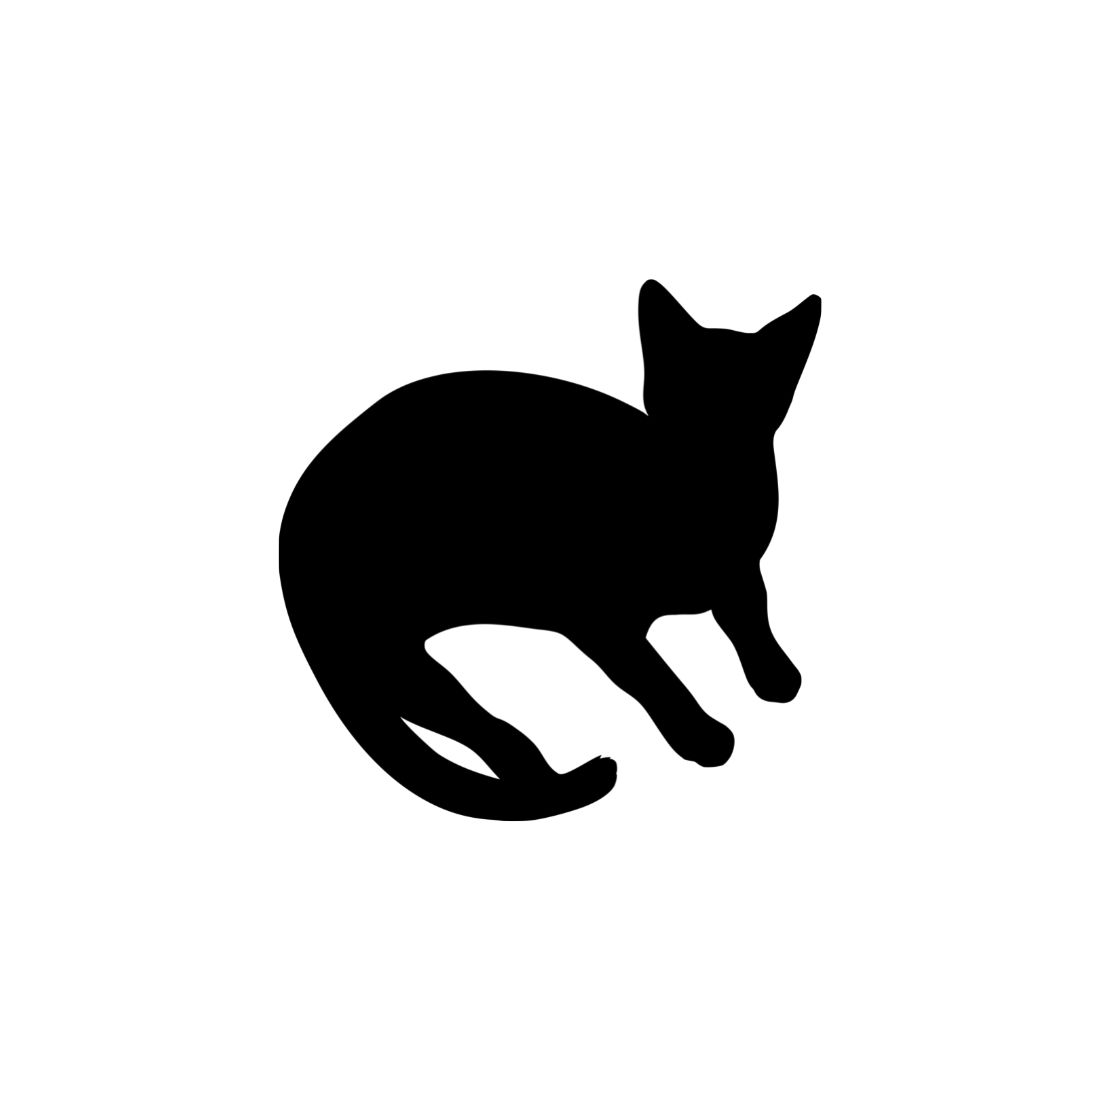 Black Cat Silhouette Bundle Preview image.